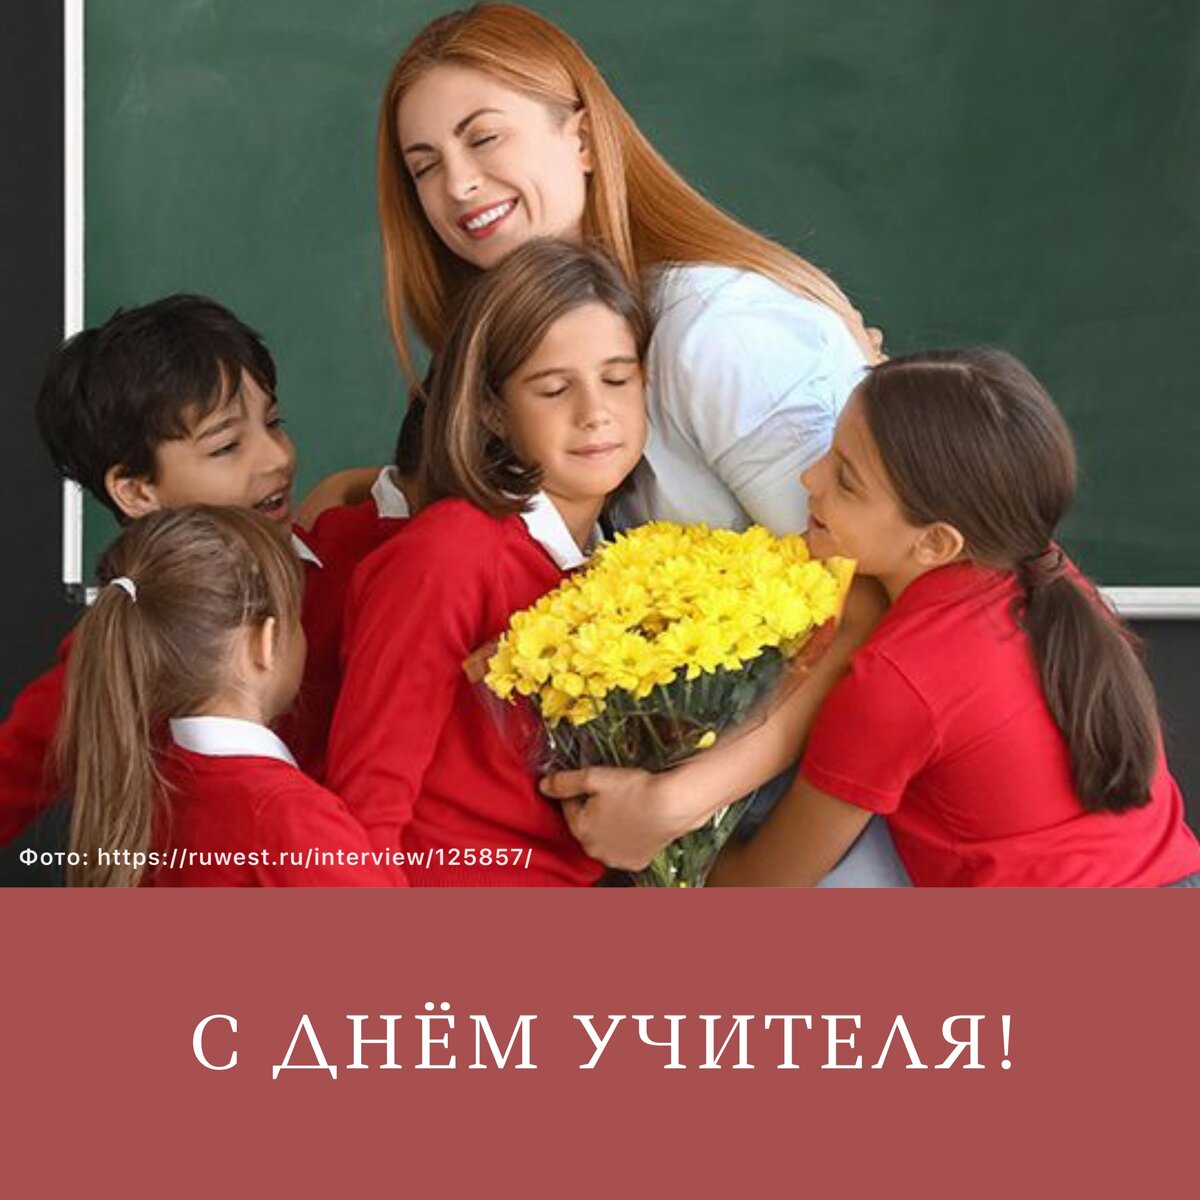 Дорогие друзья!

Сегодня Россия и еще более 100 стран мира празднуют День учителя. Конечно, это праздник для всех. У каждого из нас есть первый учитель, которого помним и благодарим.